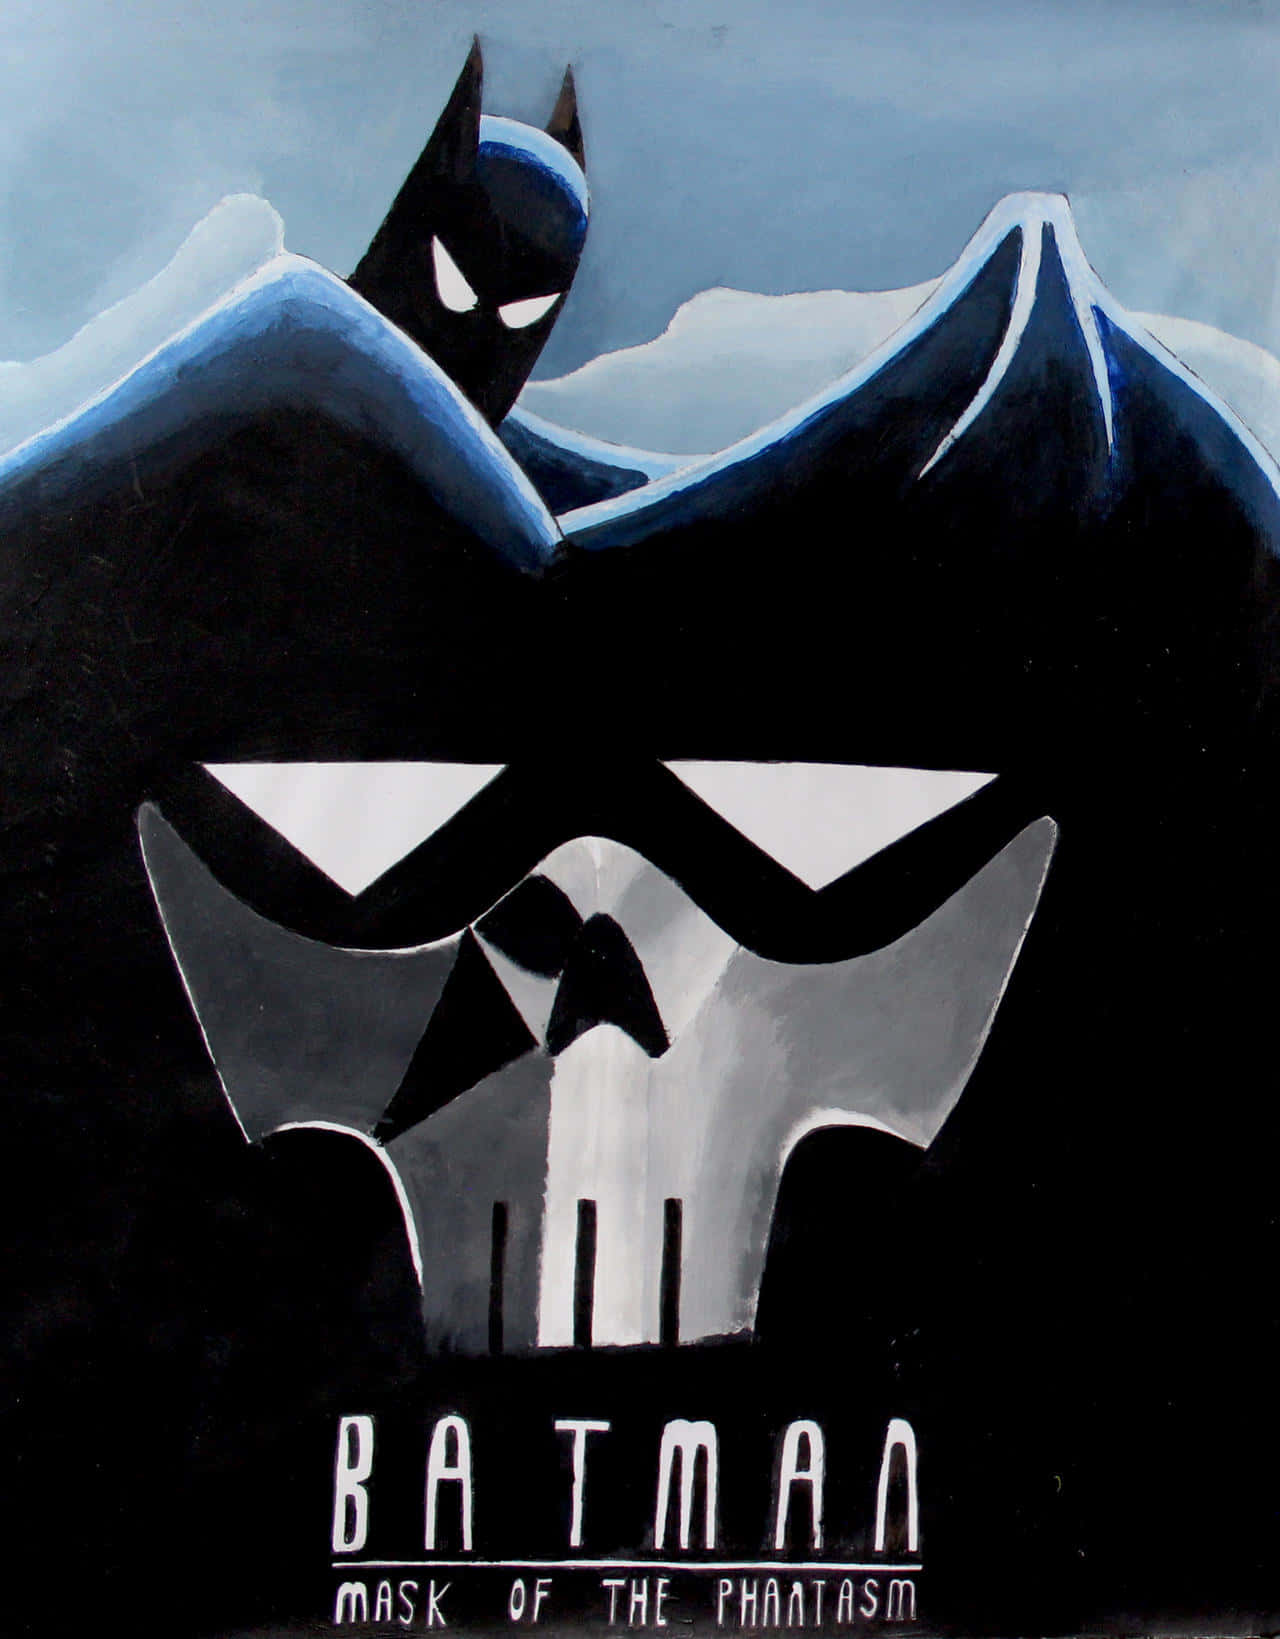 Batman and the Phantasm face-off in an intense battle Wallpaper